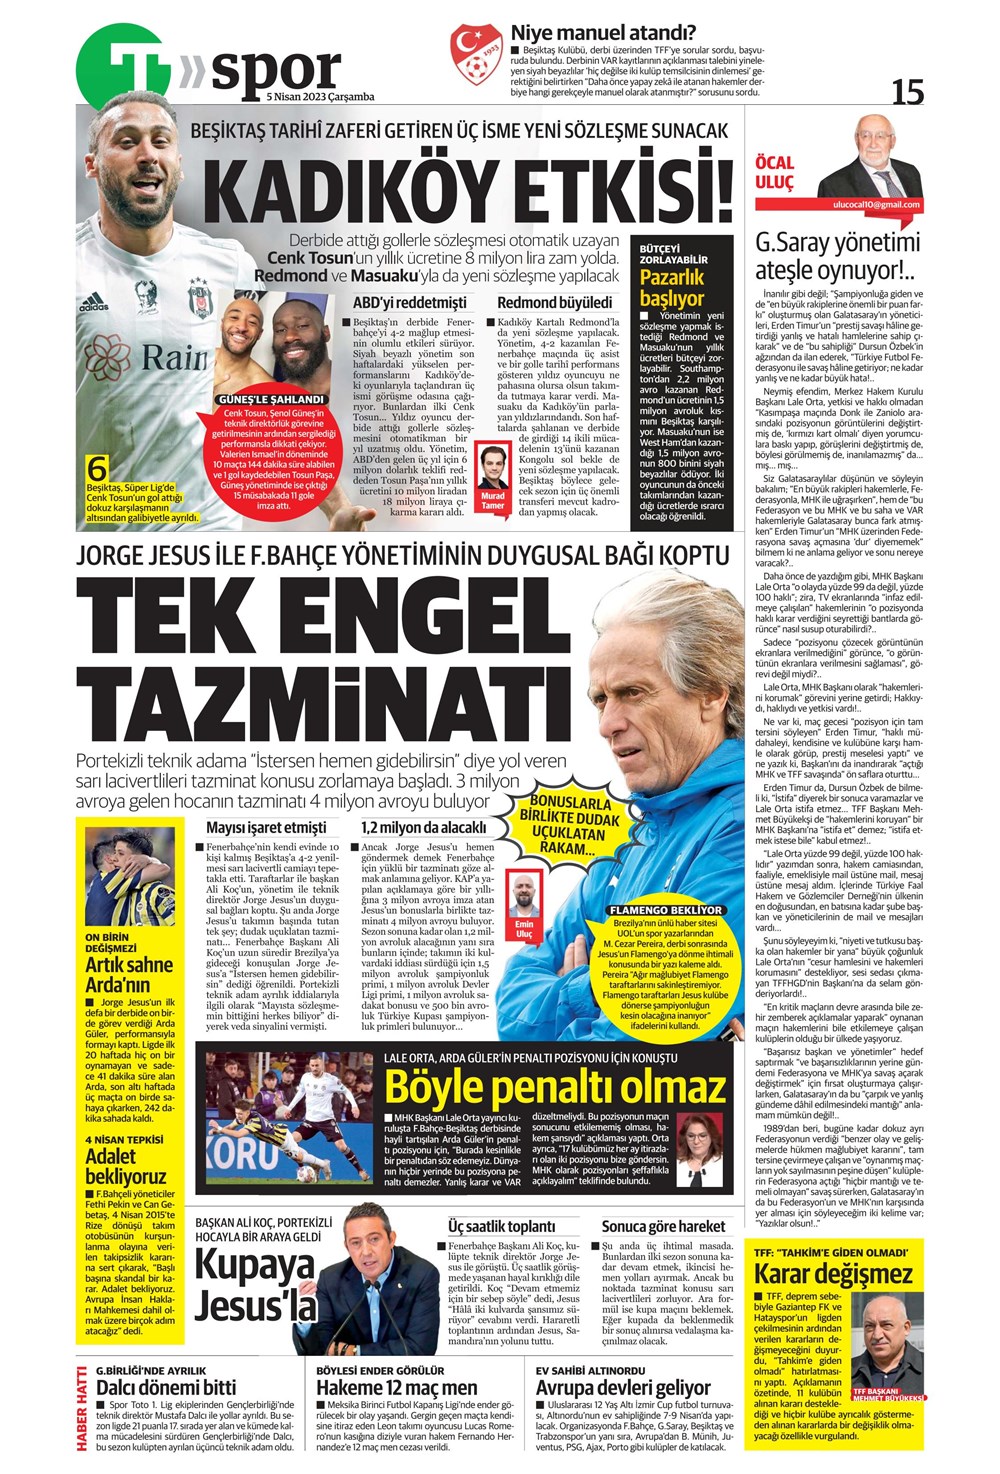 "Dünyada kimse buna penaltı demez" - Sporun manşetleri (5 Nisan 2023)  - 36. Foto